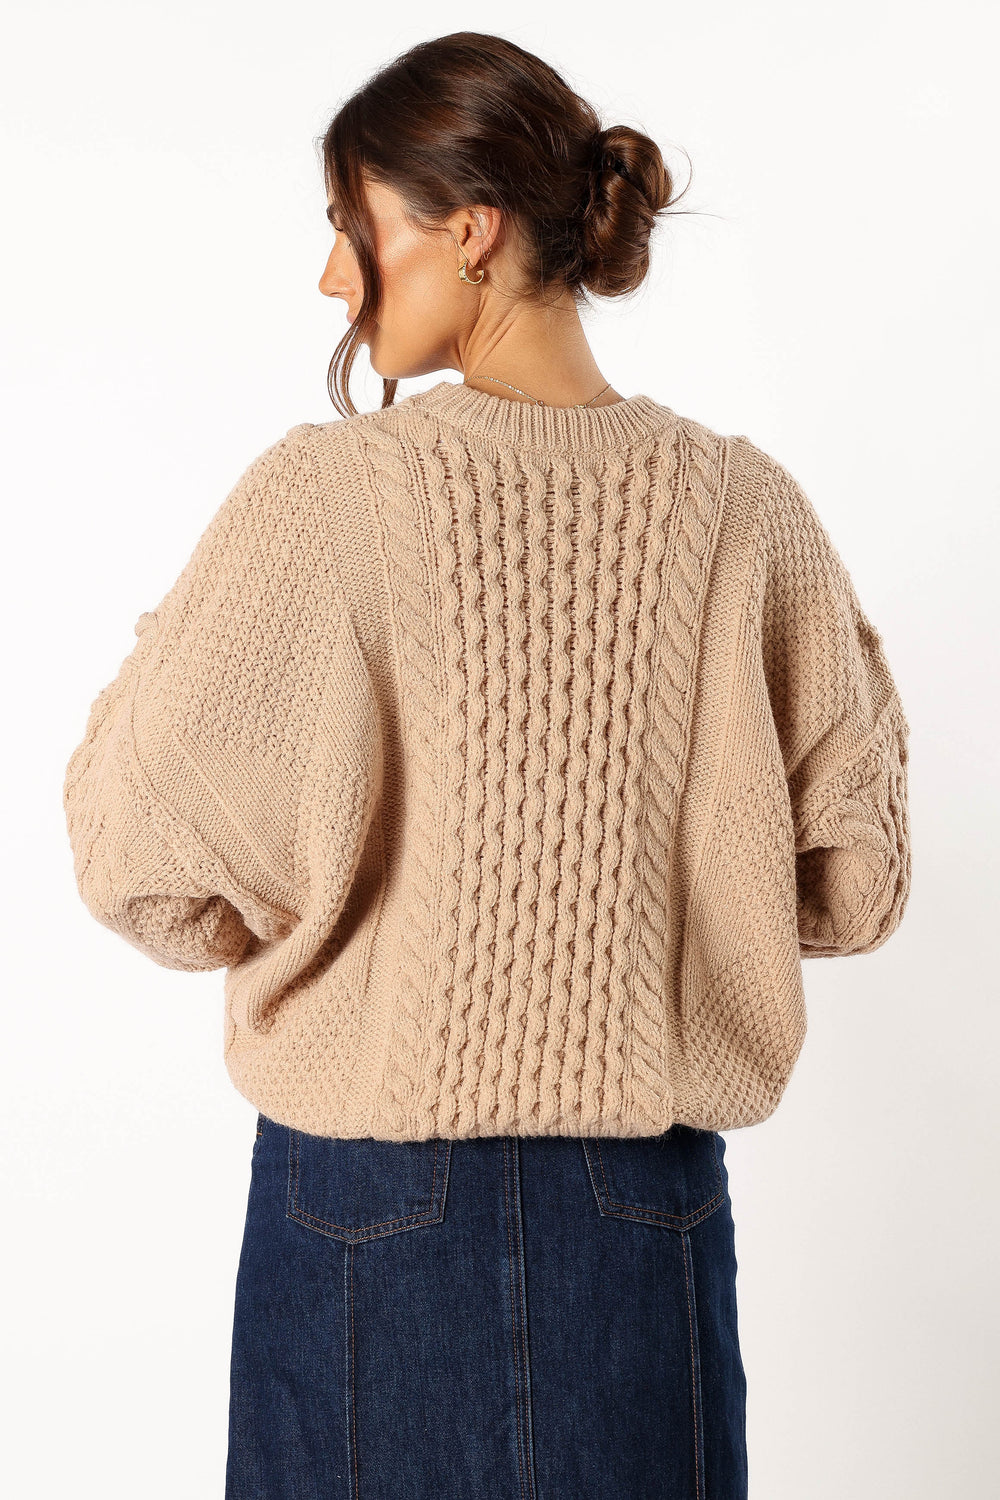 KNITWEAR @Bentley Knit Sweater - Oatmeal